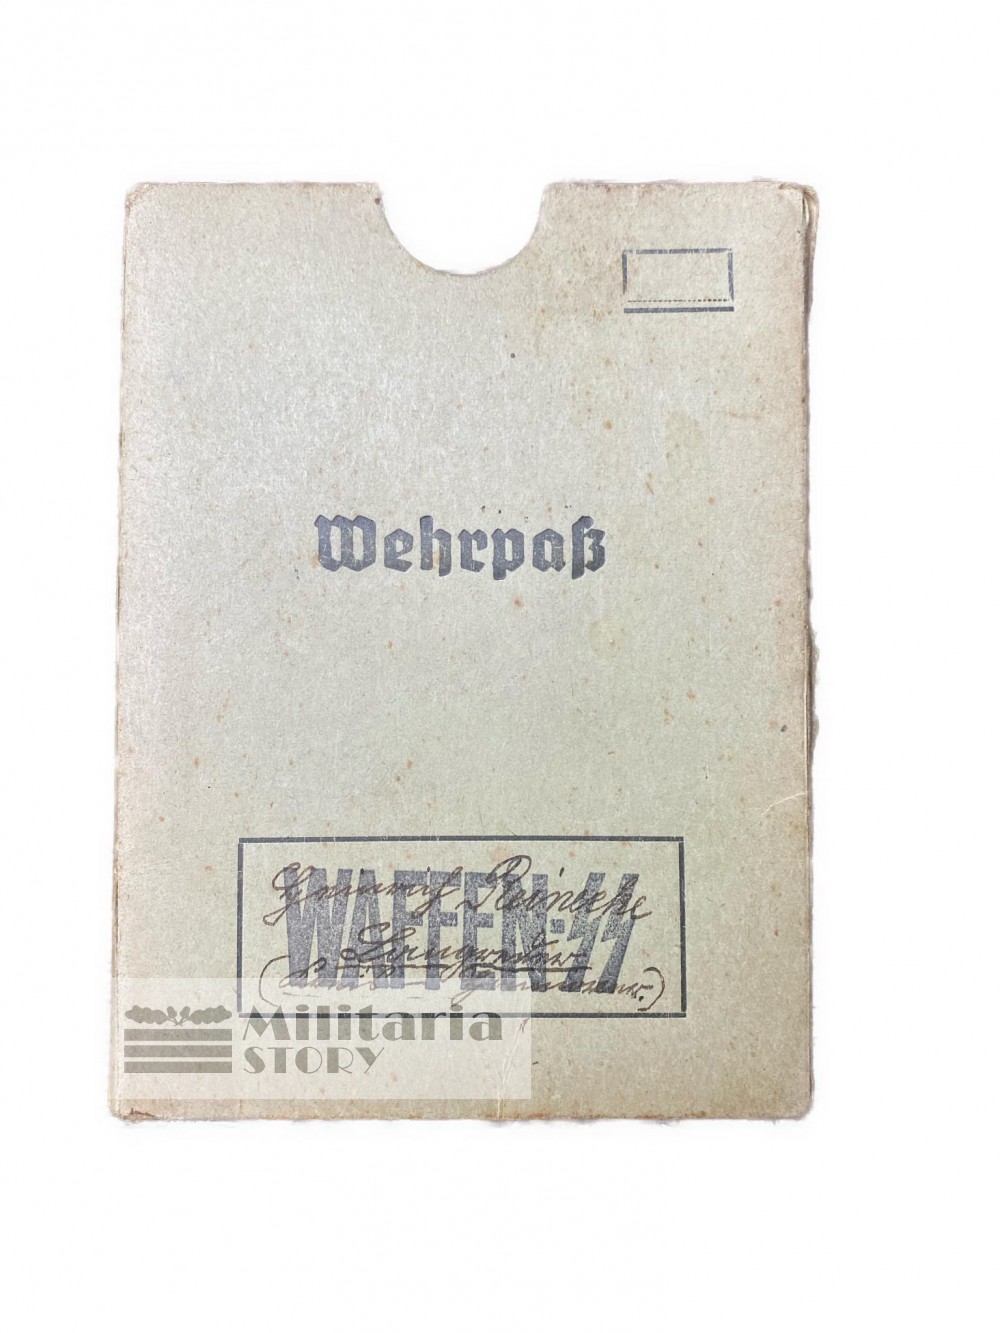 Waffen SS Wehrpass cover